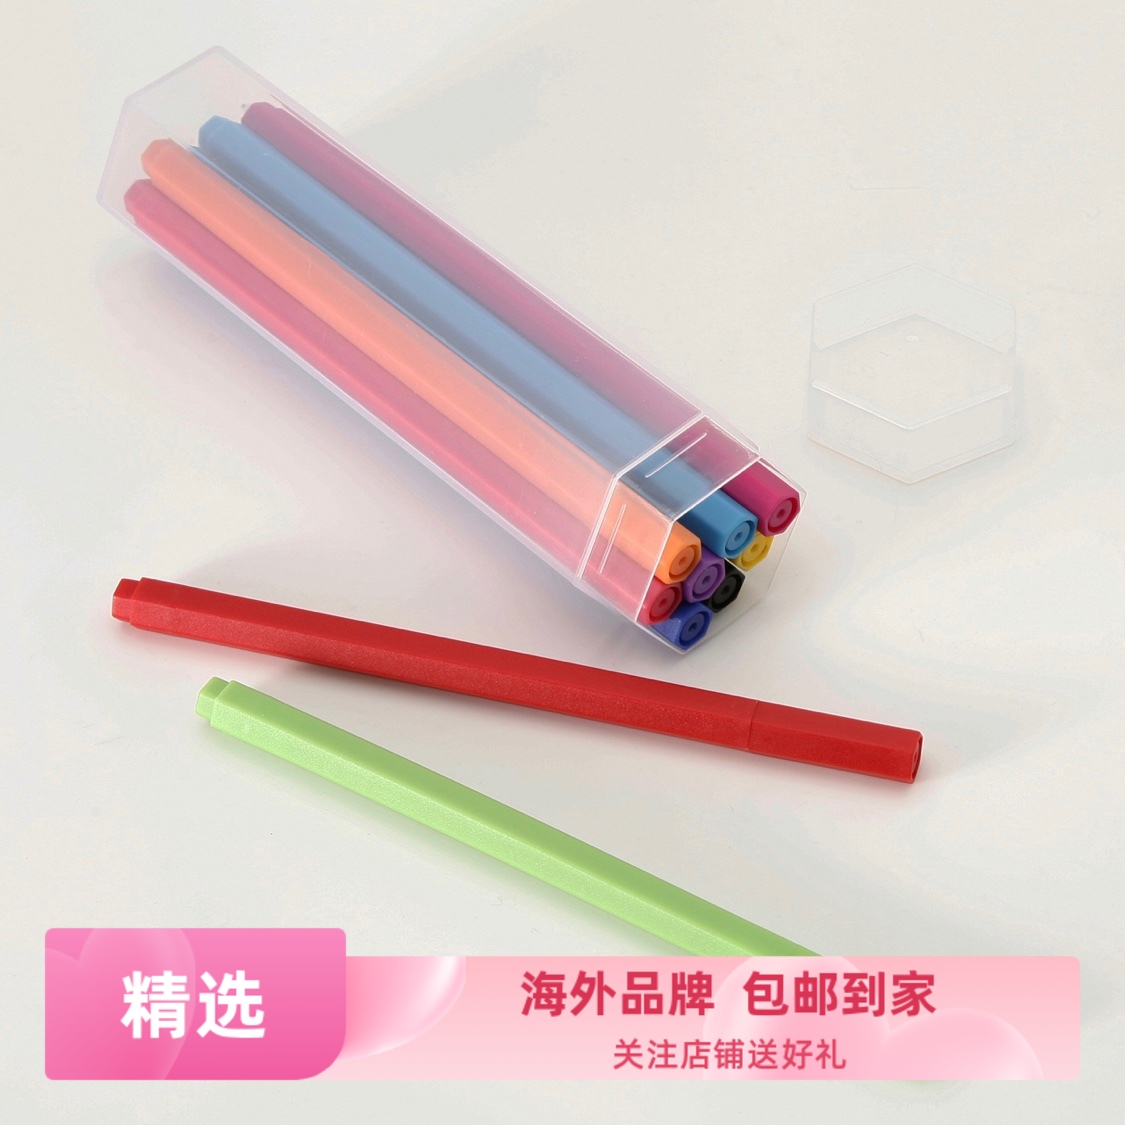 日本MUJI无印良品儿童画笔六角水性笔组/水彩笔/彩色水笔10支装